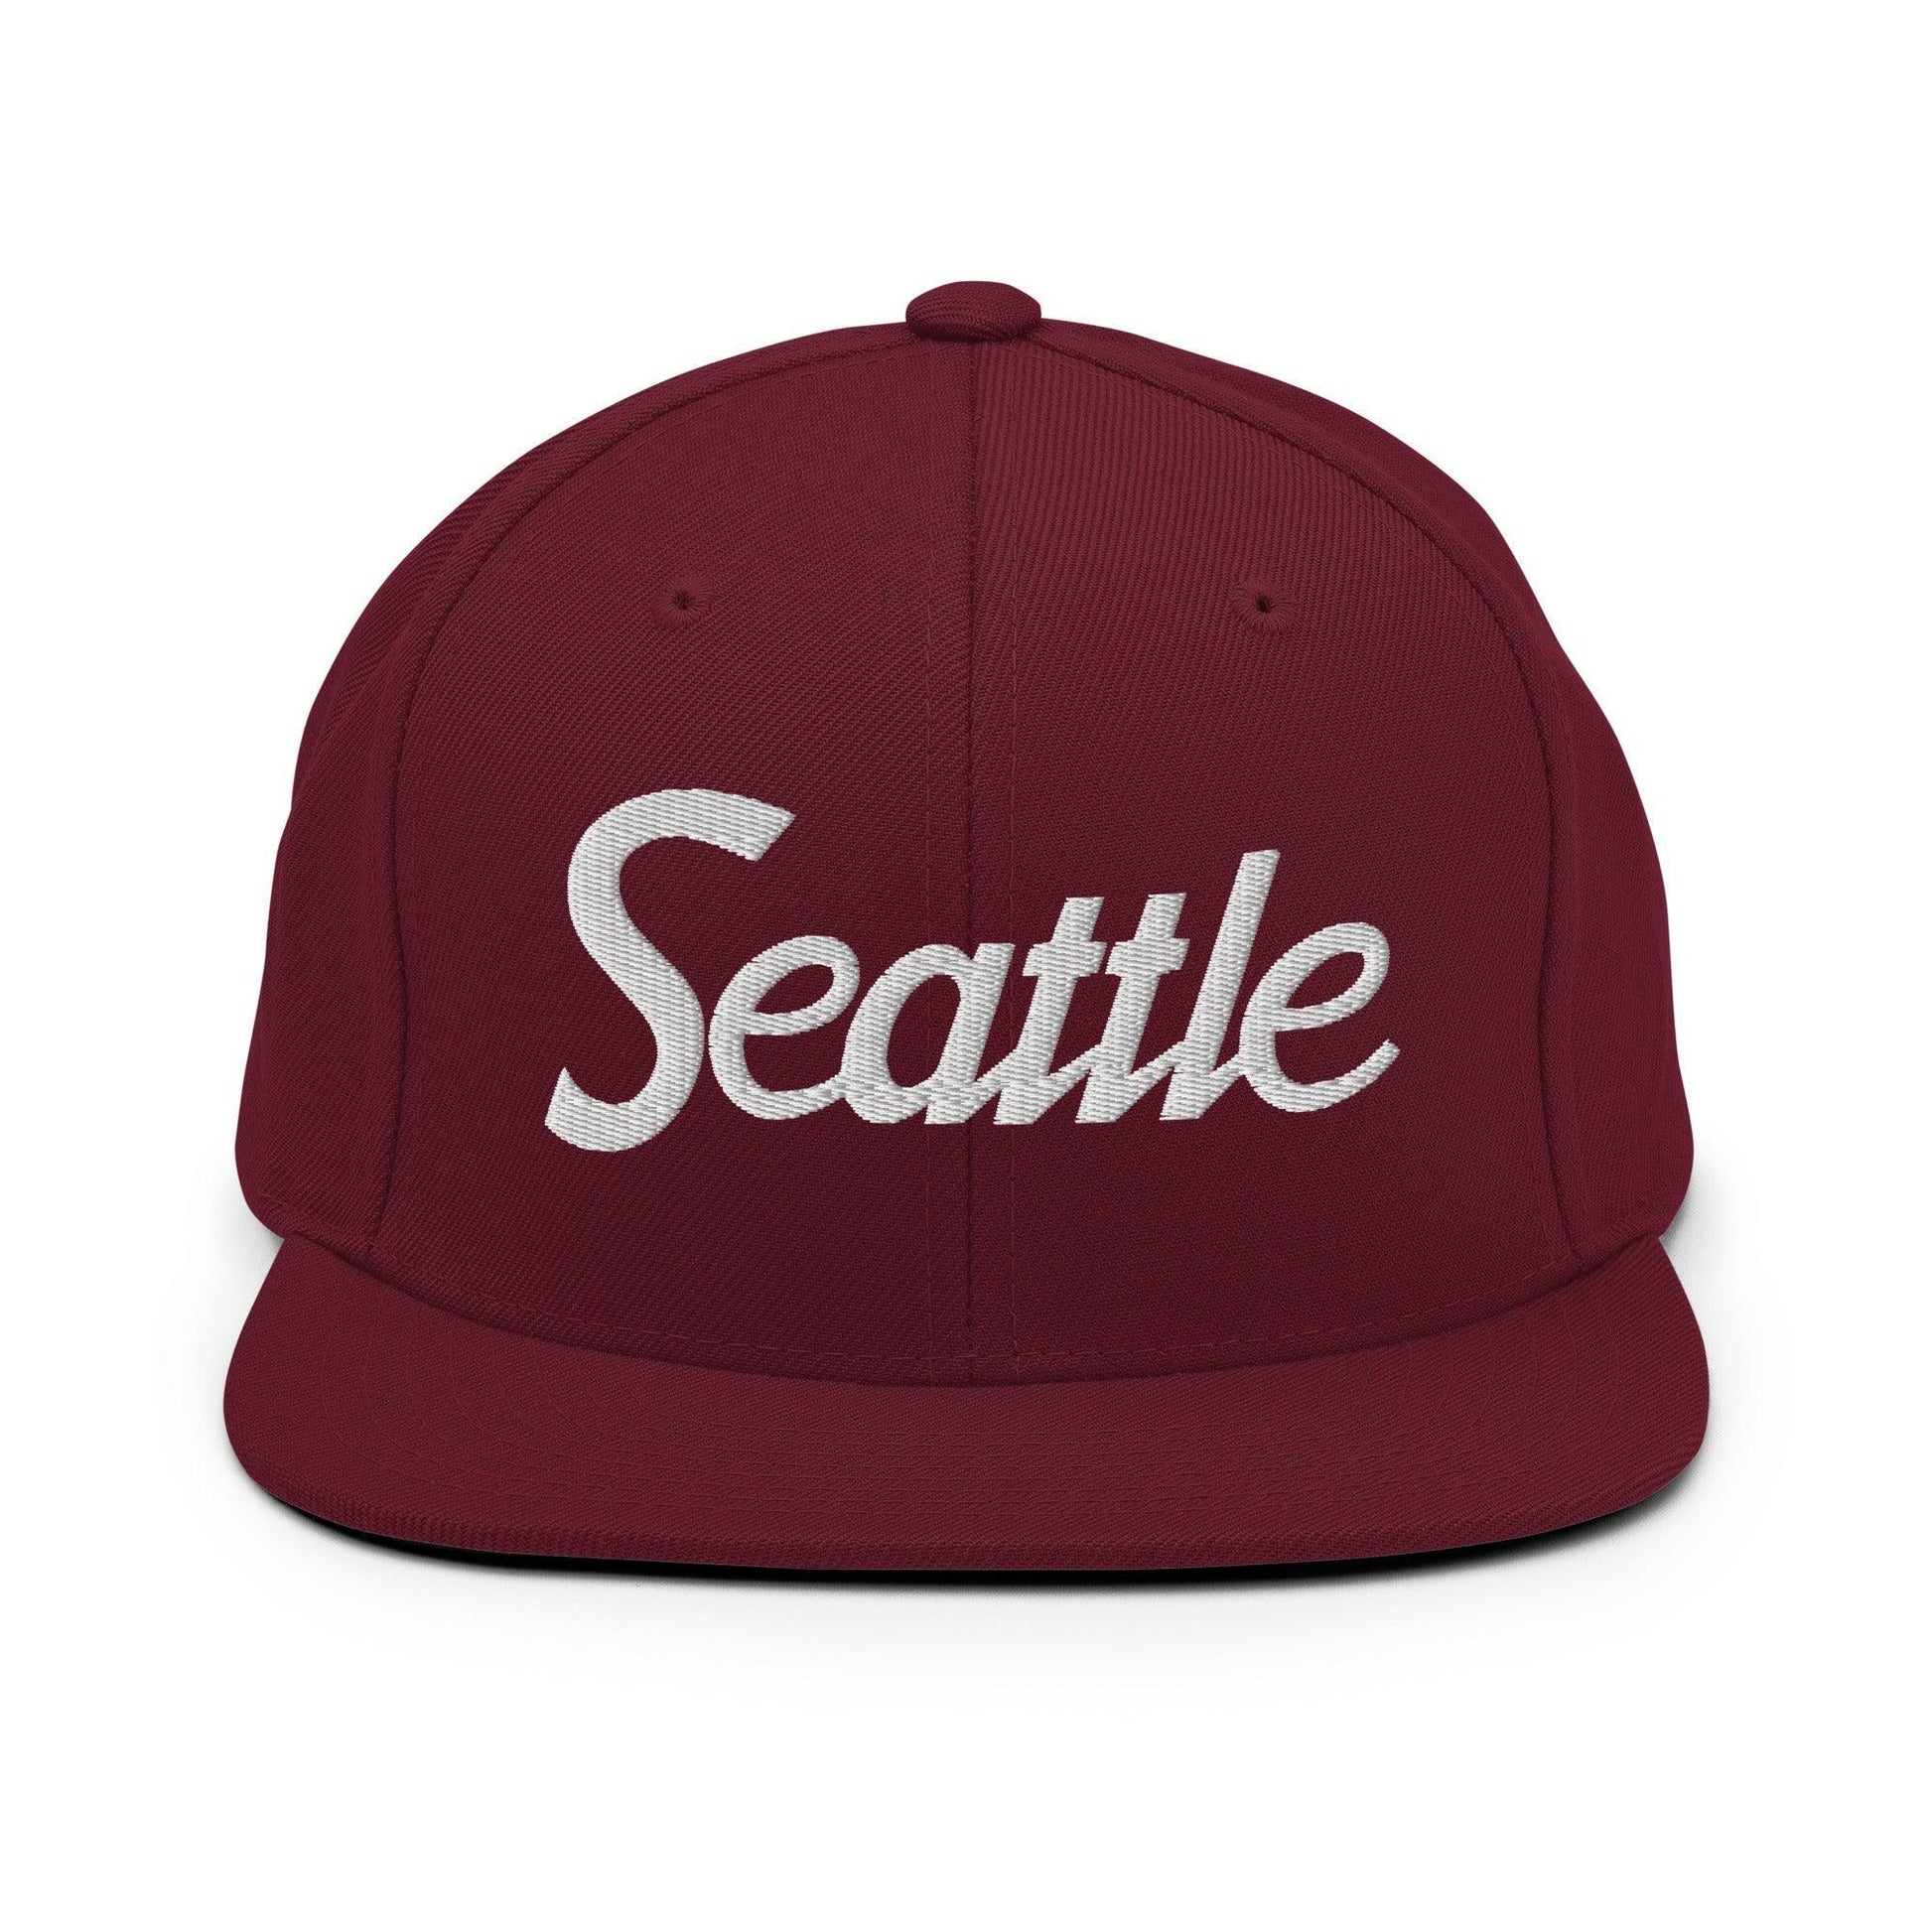 Seattle Script Snapback Hat Maroon